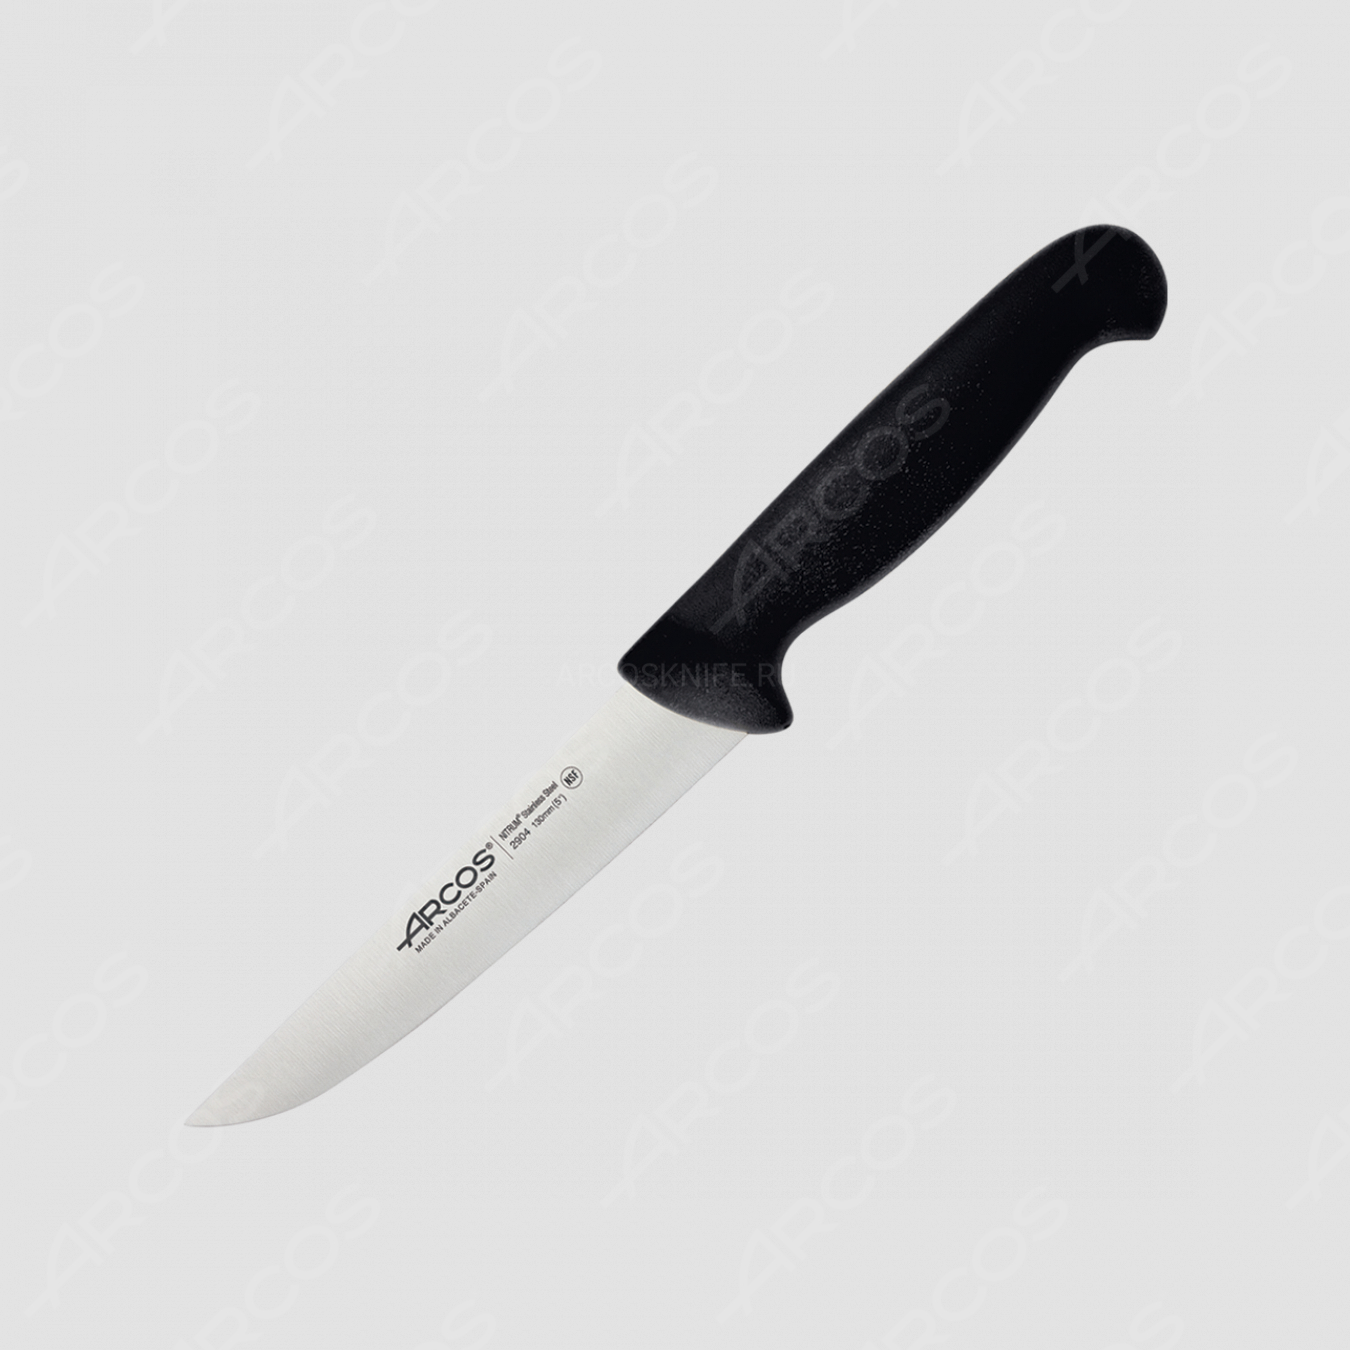 Нож кухонный 13 см, цвет рукояти черный, серия 2900, ARCOS, Испания